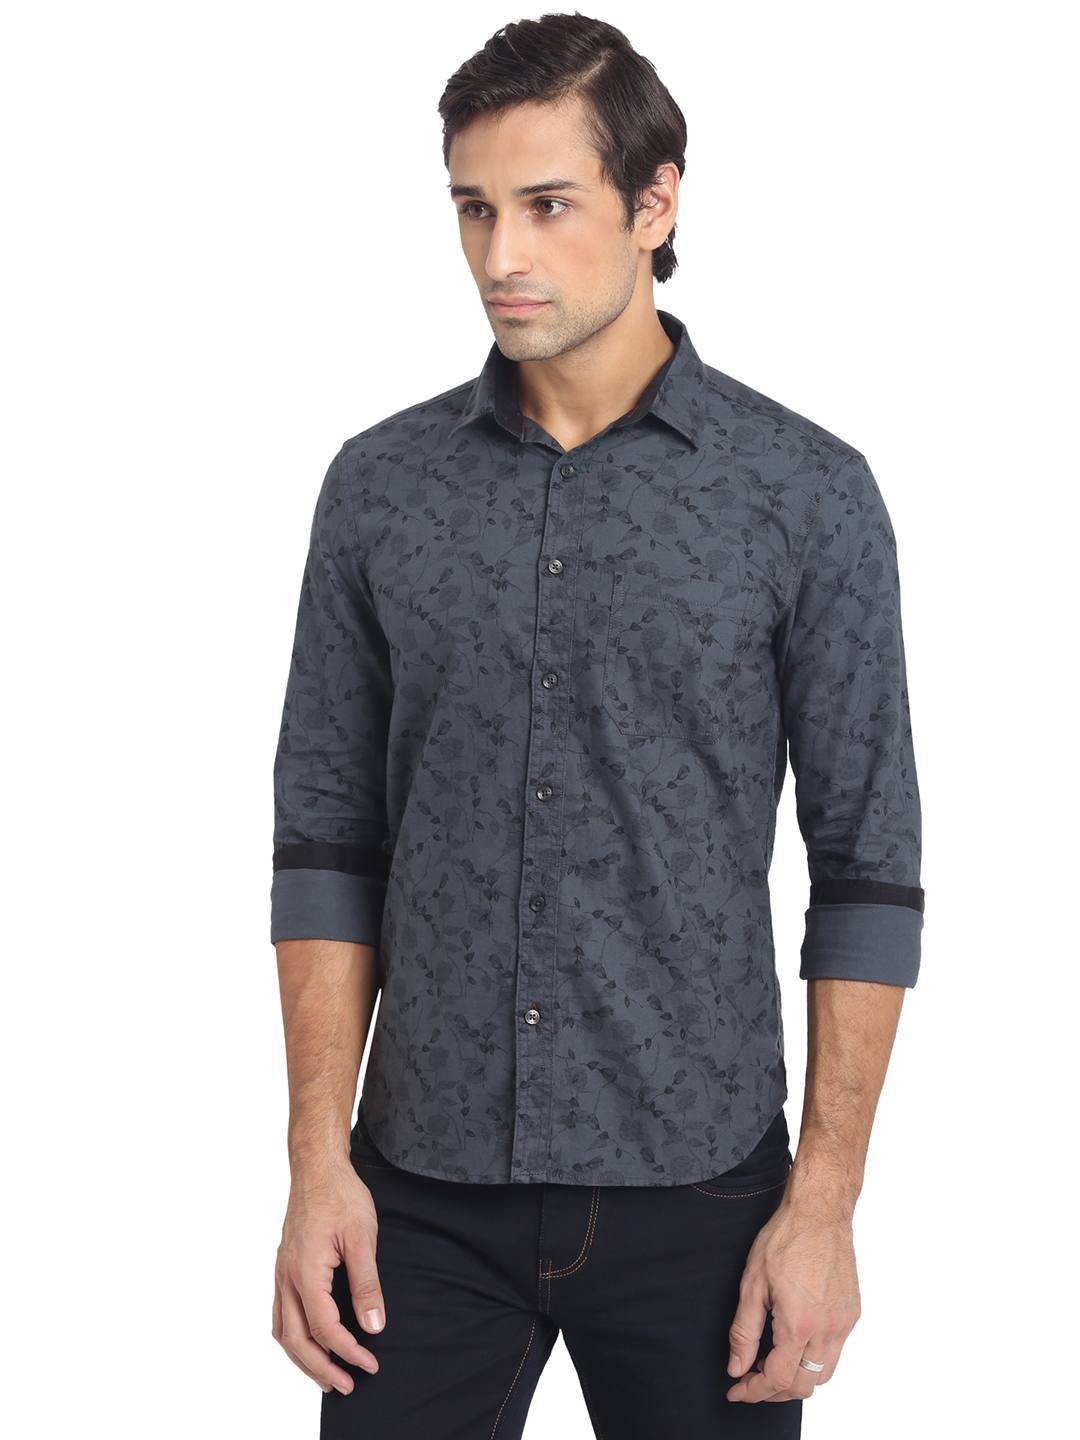 Greenfibre | Dark Grey Printed Slim Fit Semi Casual Shirt | Greenfibre